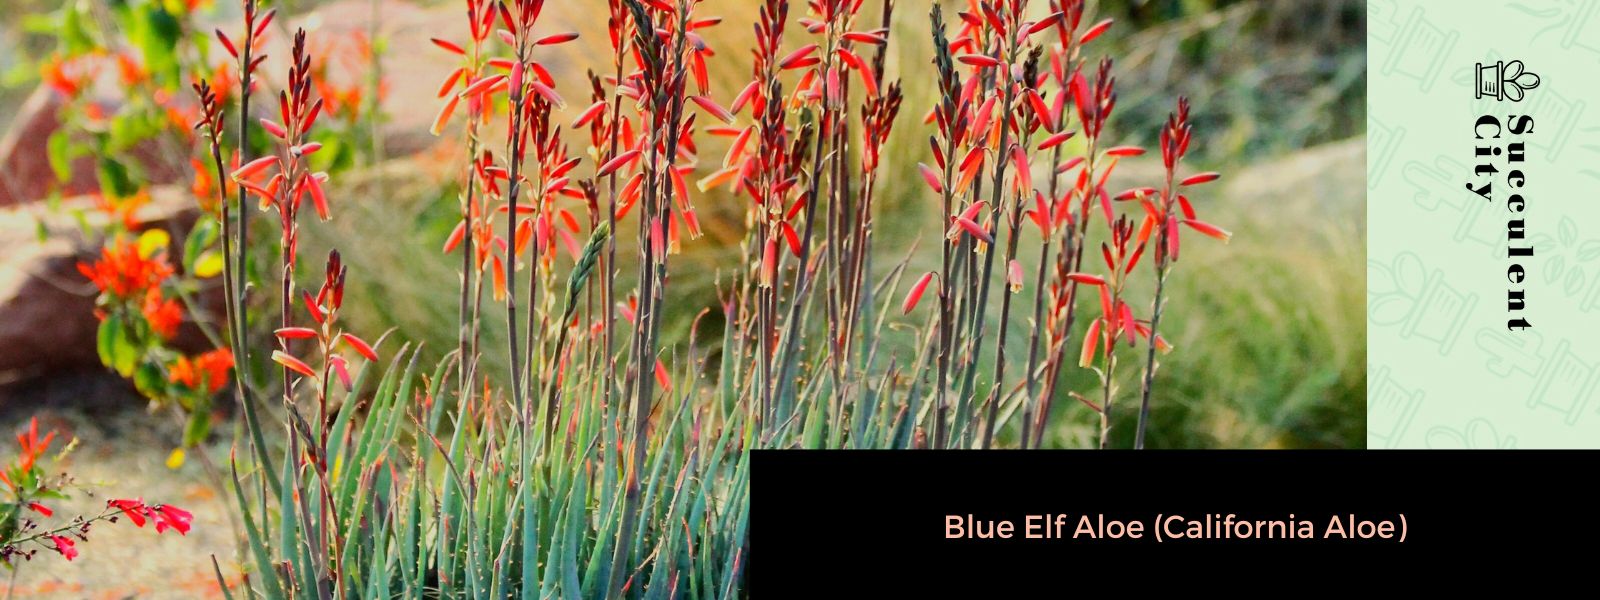 Aloe elfo azul (áloe de California)